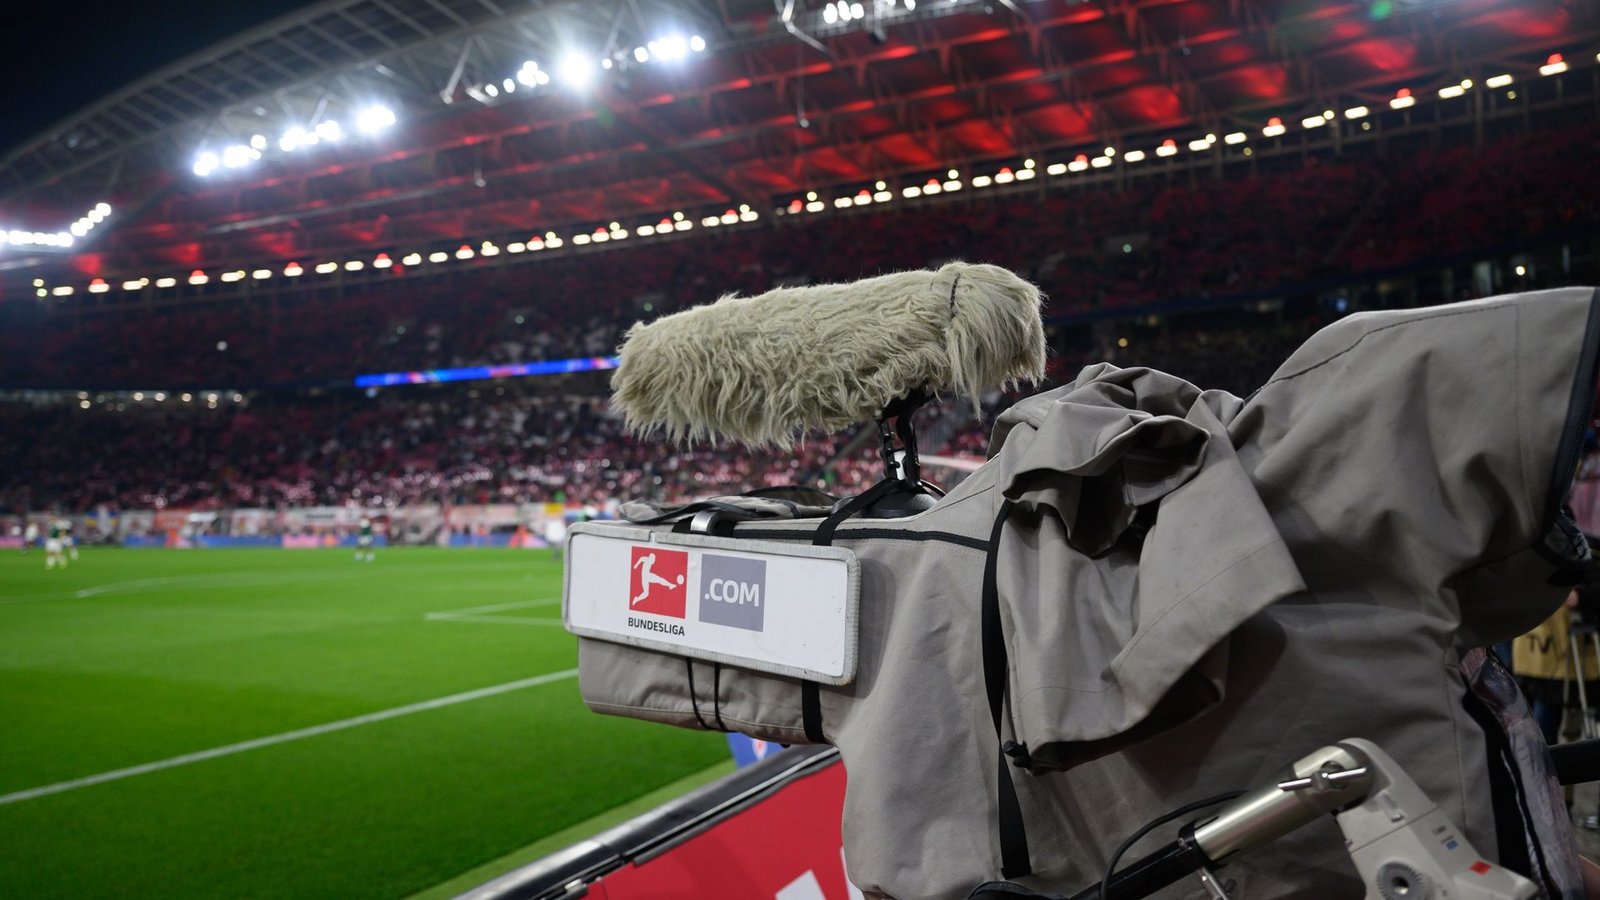 Nur kurz nach dem Start der Auktion der Fernseh-Rechte hat die Deutsche Fußball Liga das Milliarden-Geschäft gestoppt.Foto: Robert Michael/dpa